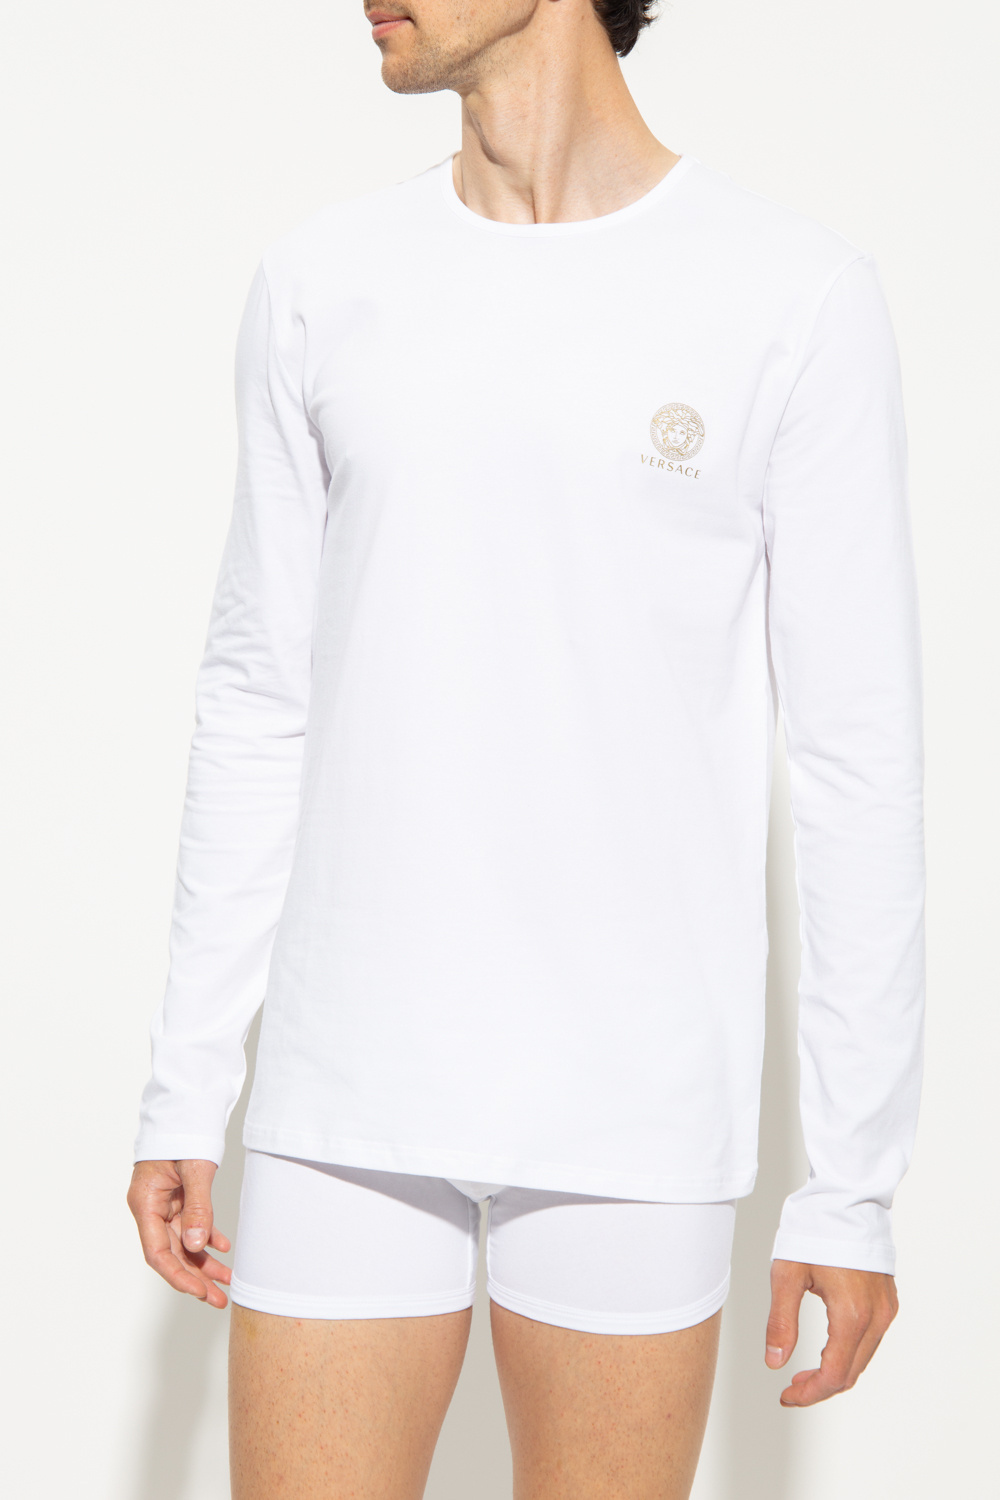 Versace White Plus New Year 2022 T-shirt